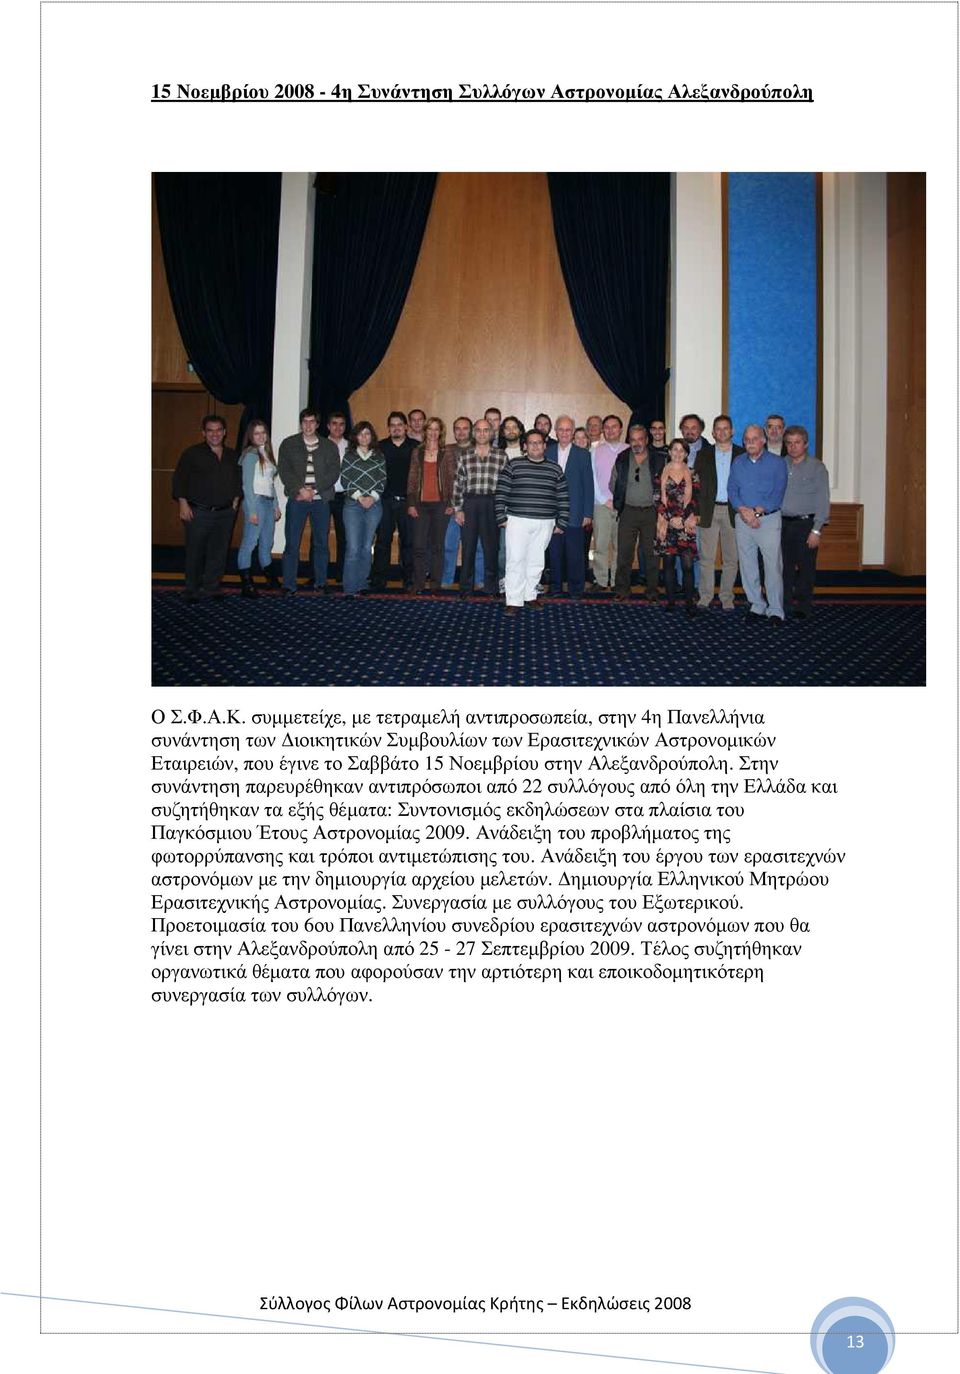 Στην συνάντηση παρευρέθηκαν αντιπρόσωποι από 22 συλλόγους από όλη την Ελλάδα και συζητήθηκαν τα εξής θέµατα: Συντονισµός εκδηλώσεων στα πλαίσια του Παγκόσµιου Έτους Αστρονοµίας 2009.